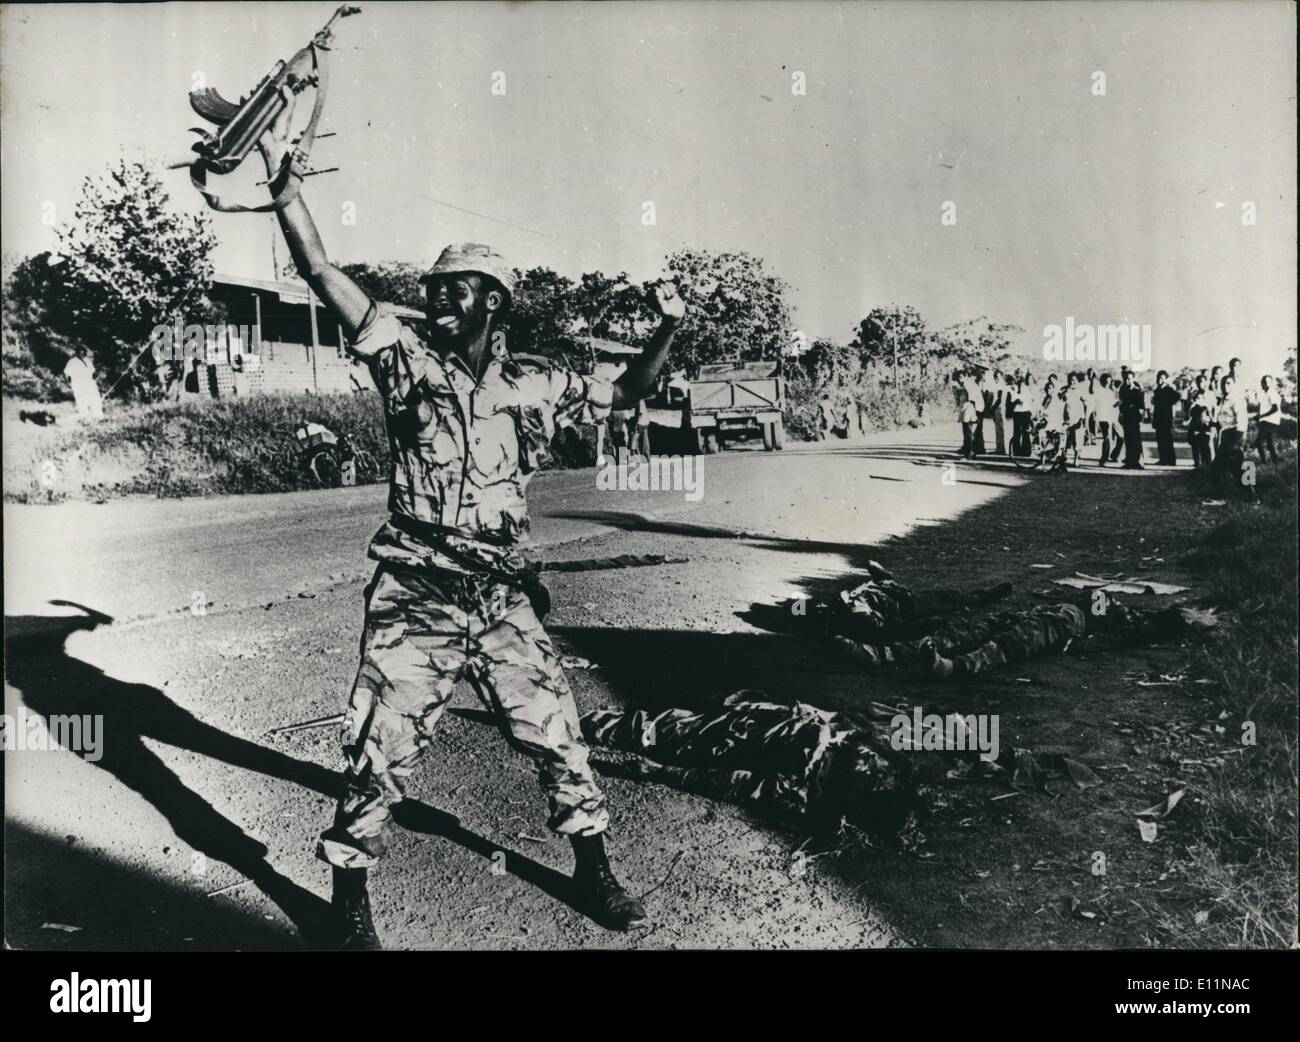 Apr. 04, 1979 - soldato della Tanzania mostra soldati libico.: un buon soldato della Tanzania dopo aver girato tre soldati libico durante la lotta per la cattura di Kampala. Enti libici sono in background. Foto Stock